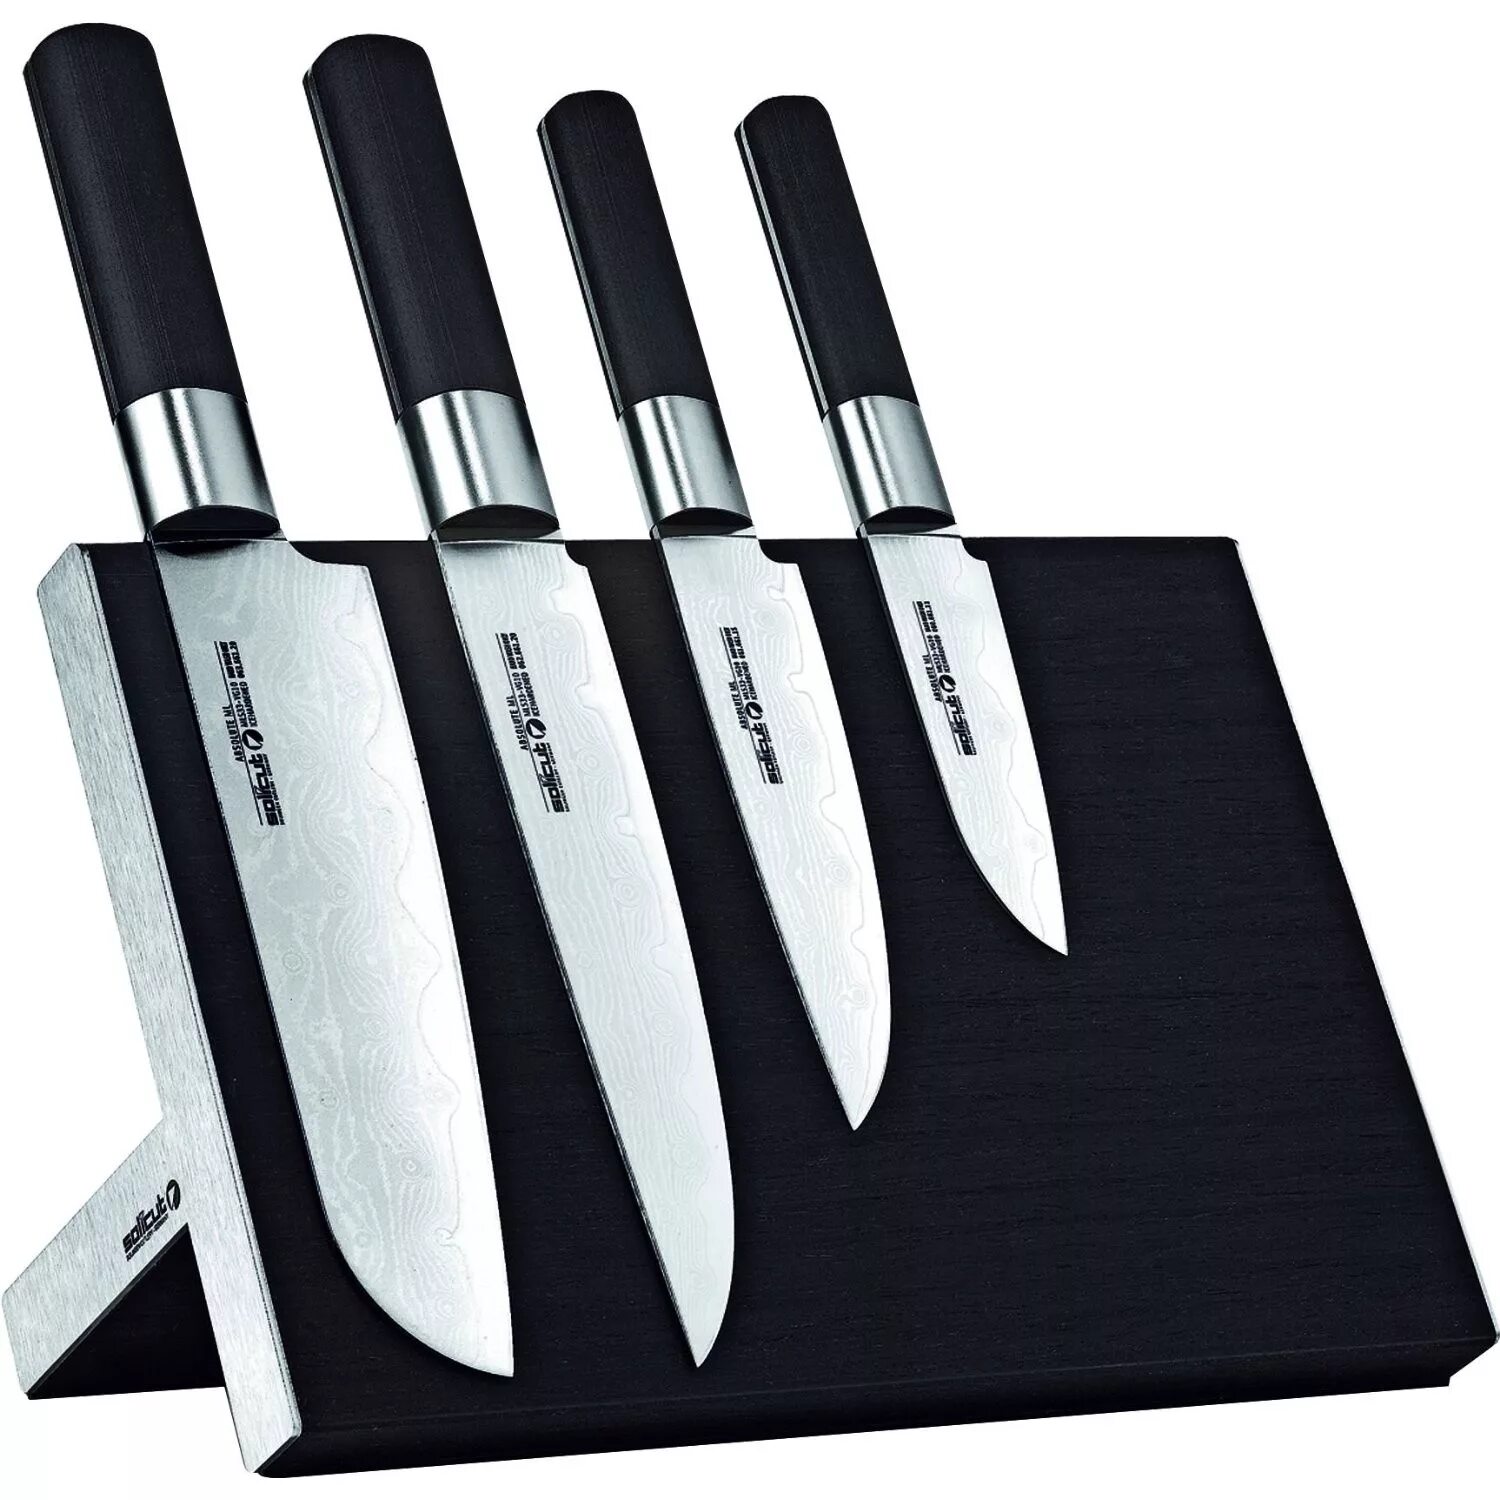 Ножи кухонные взять. Кухонный нож. Набор ножей для кухни. Дизайнерские кухонные ножи. Нажми куханые.